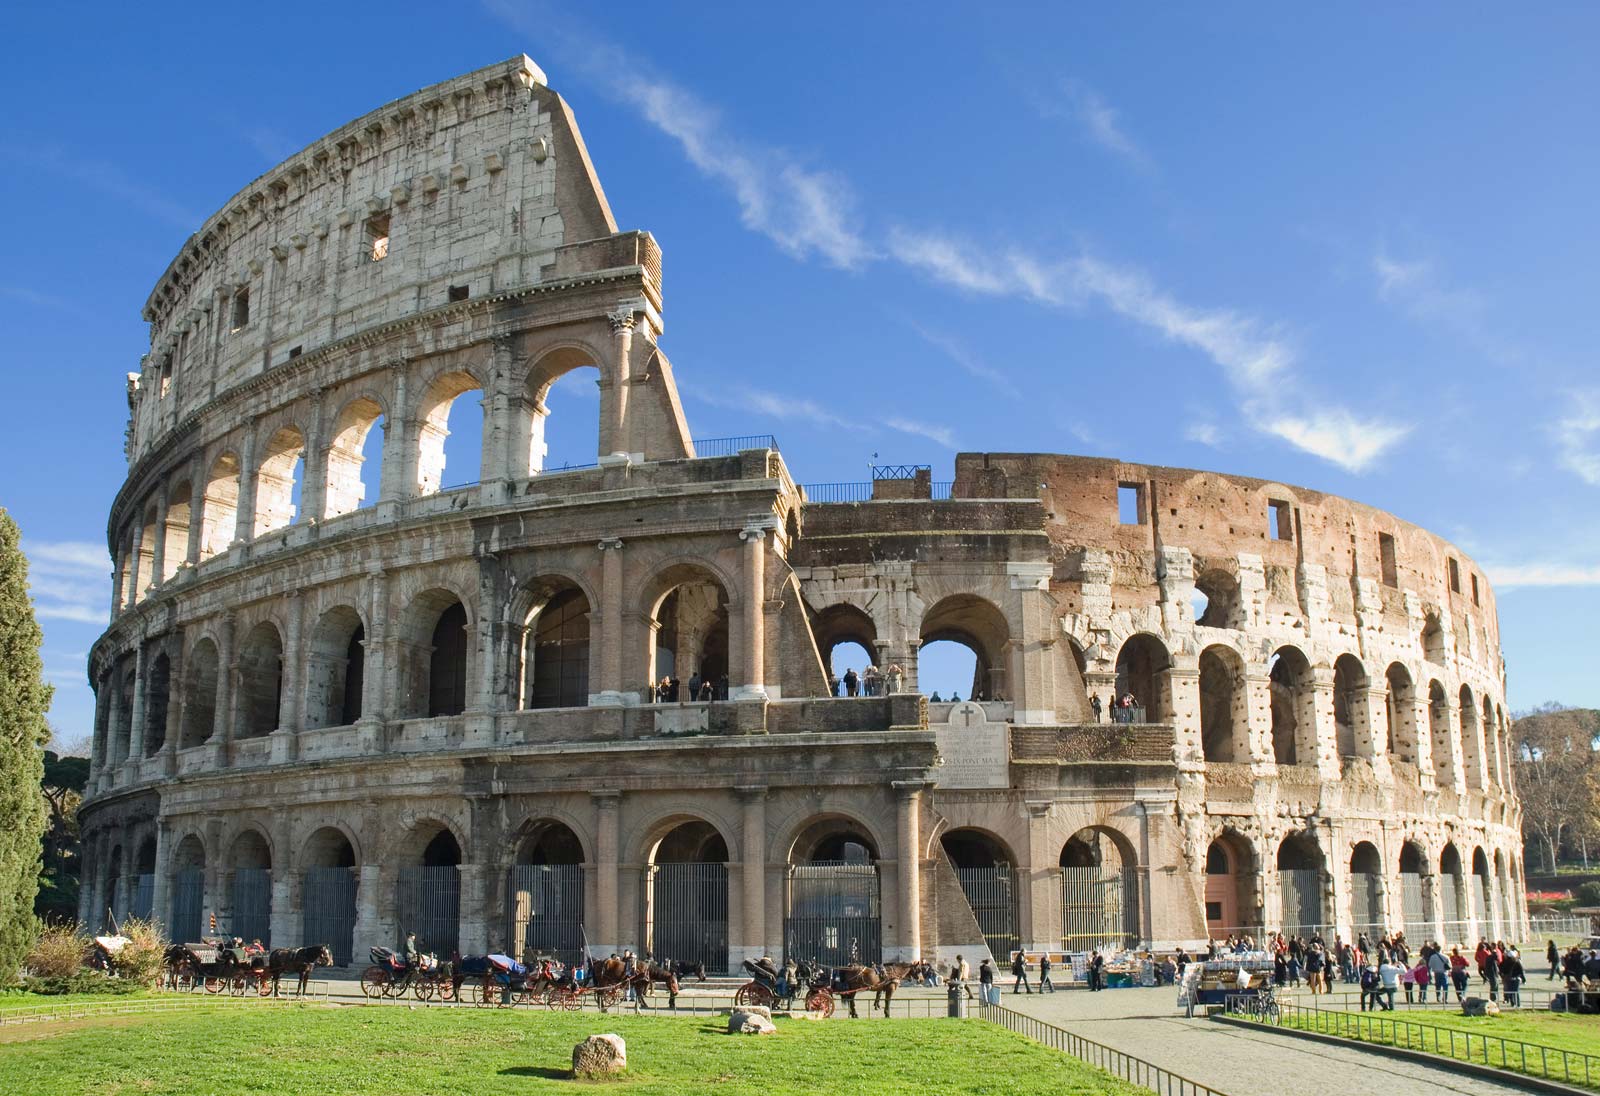 Mengunjungi Colosseum; Tips, Trick, Hal Menarik Colosseum - Elec Toolbox -  Informasi alat reparasi listrik dan electronik